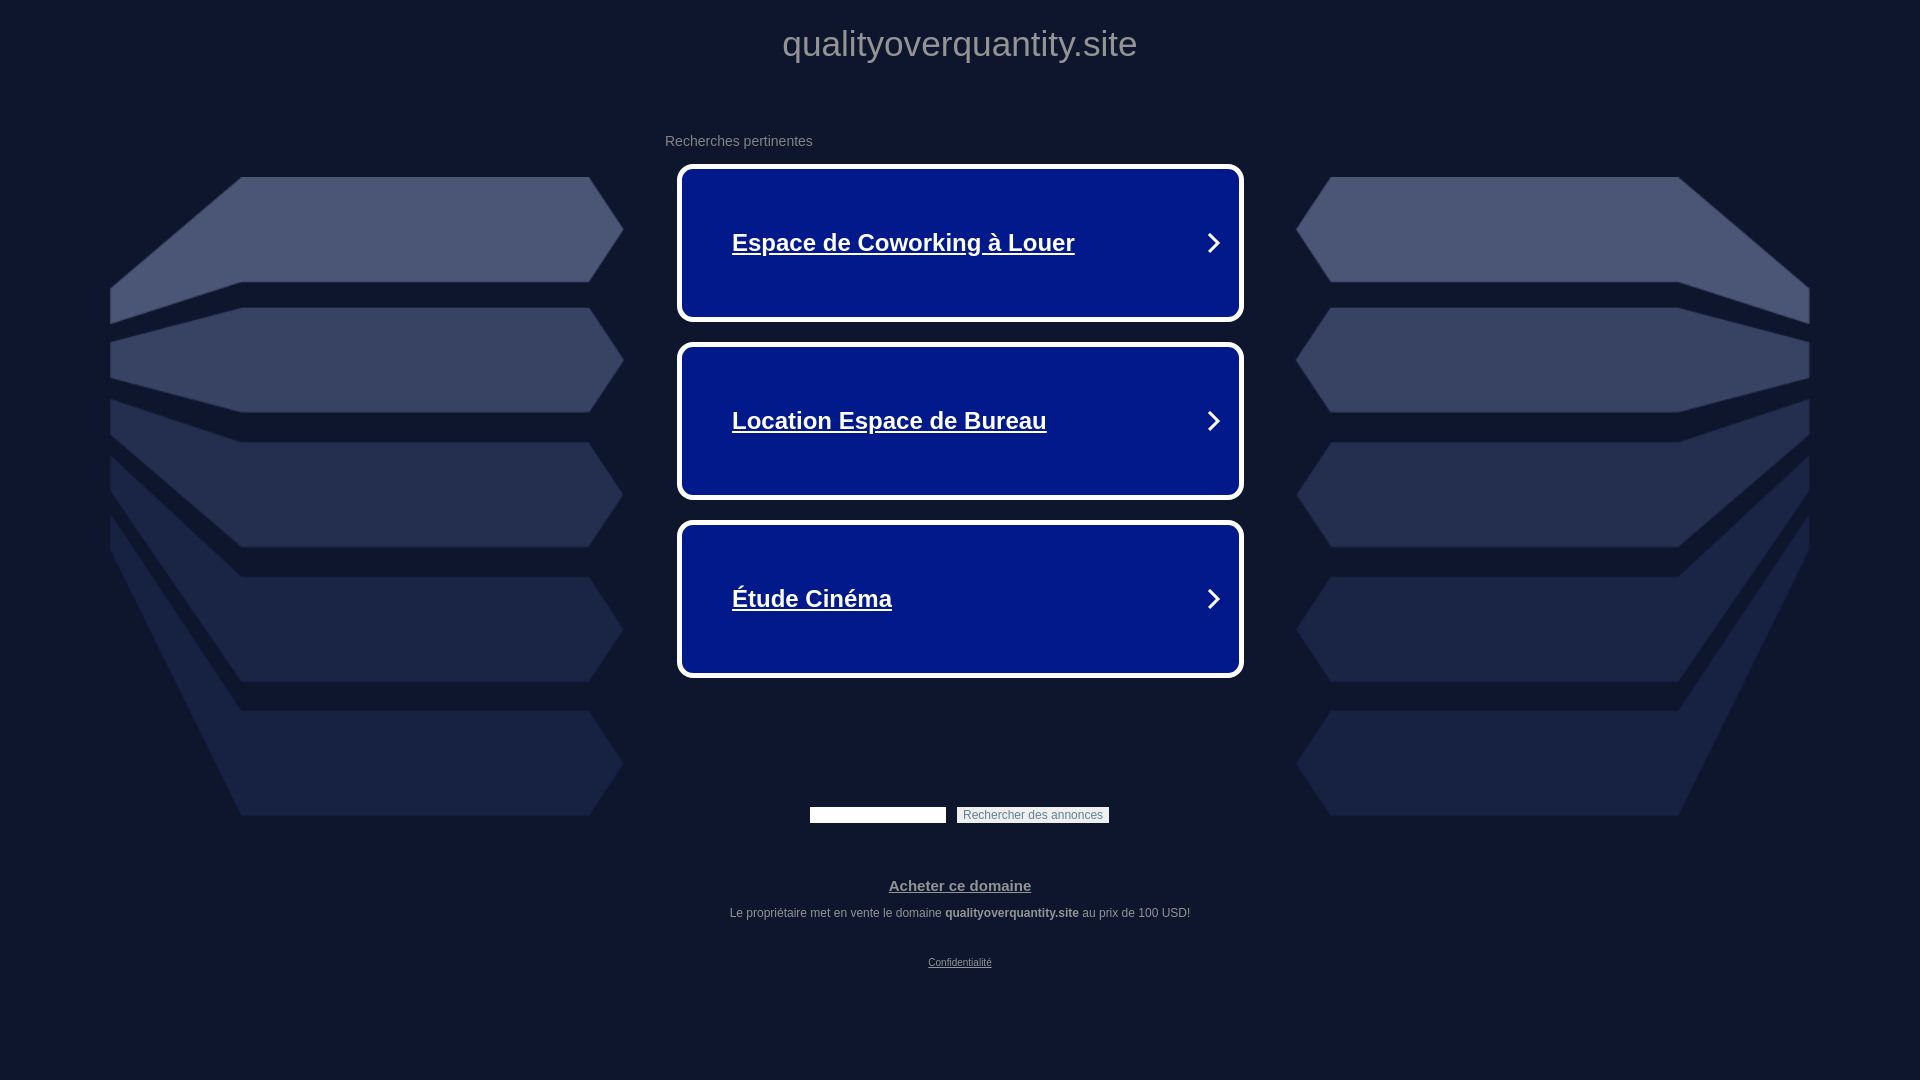 网站状态 qualityoverquantity.site 是  在线的